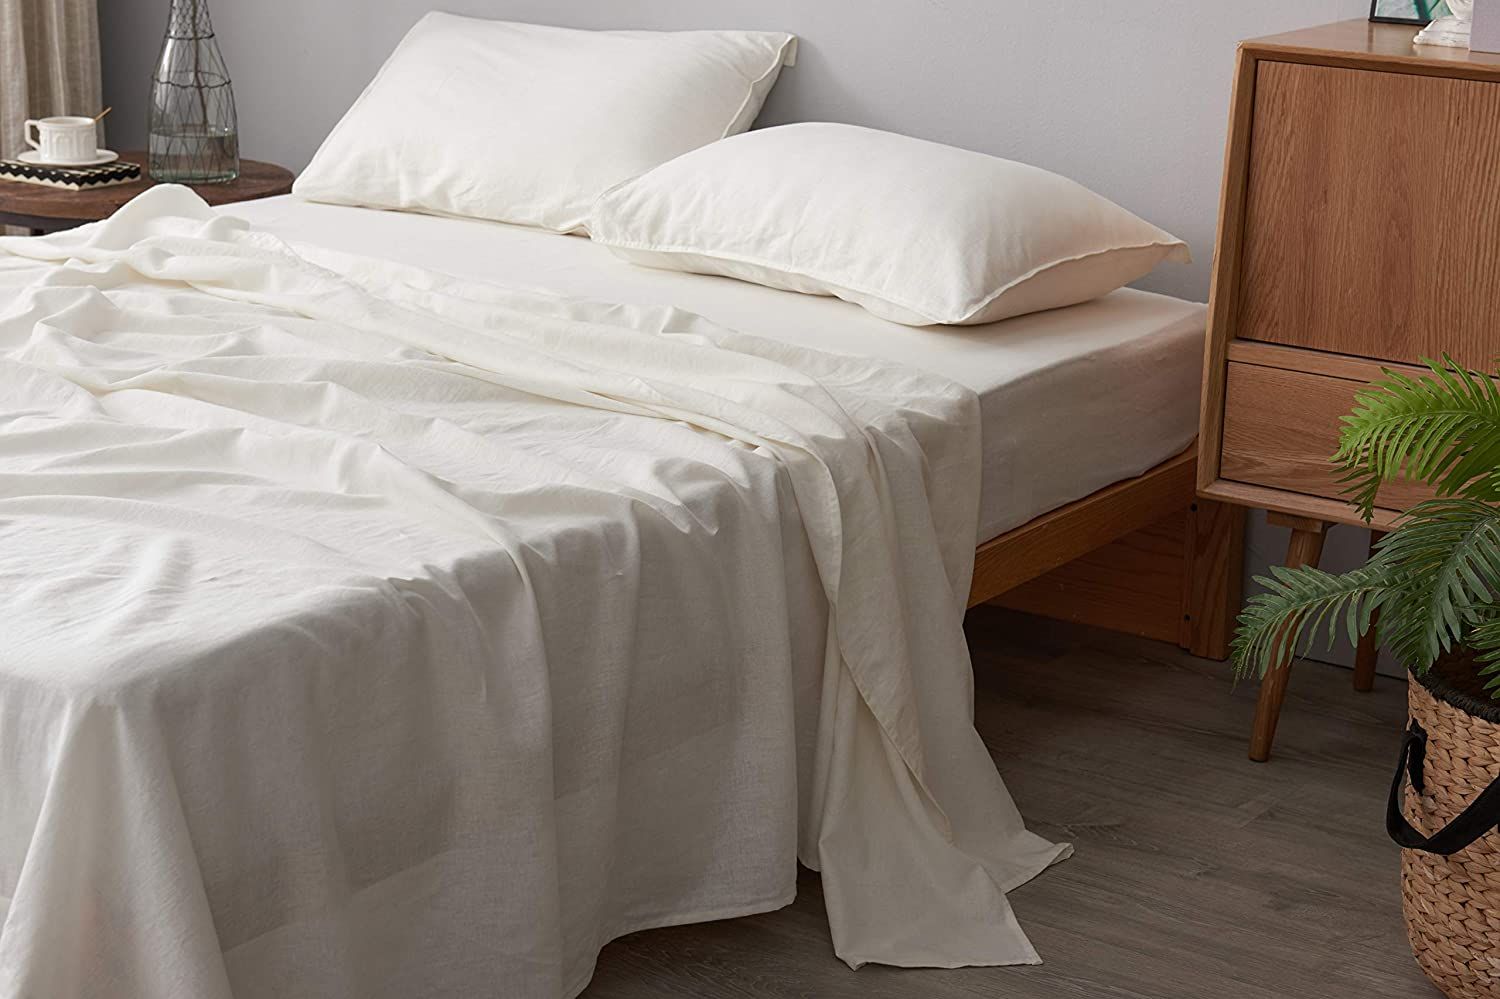 Details about   Double bed sheets Masters cotonieri Cotton BONJOUR Various Colours show original title 